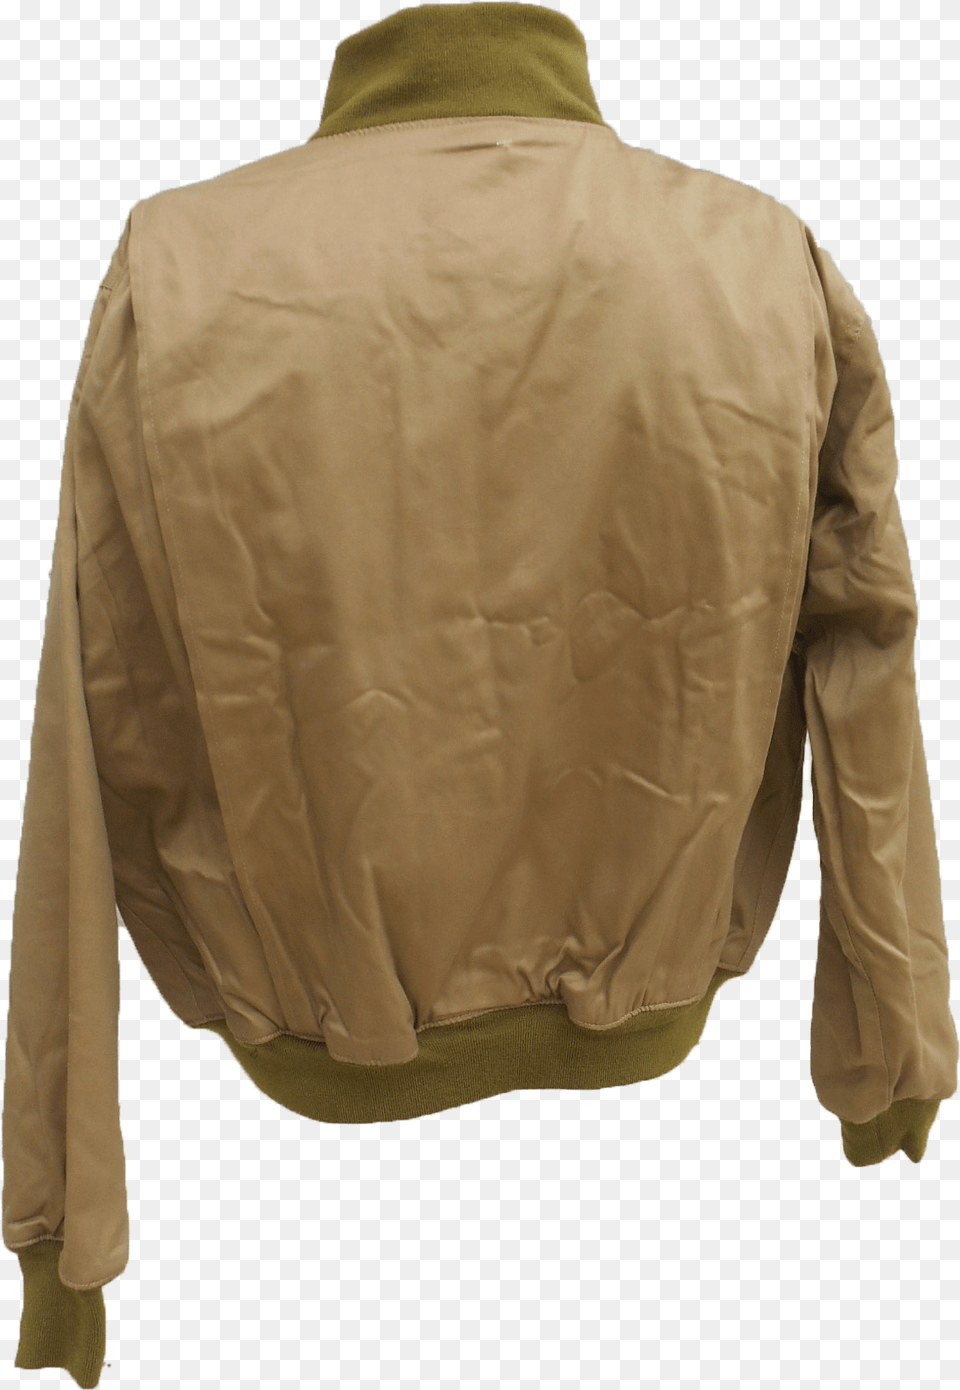 Leather Jacket, Clothing, Coat, Khaki, Blazer Png Image